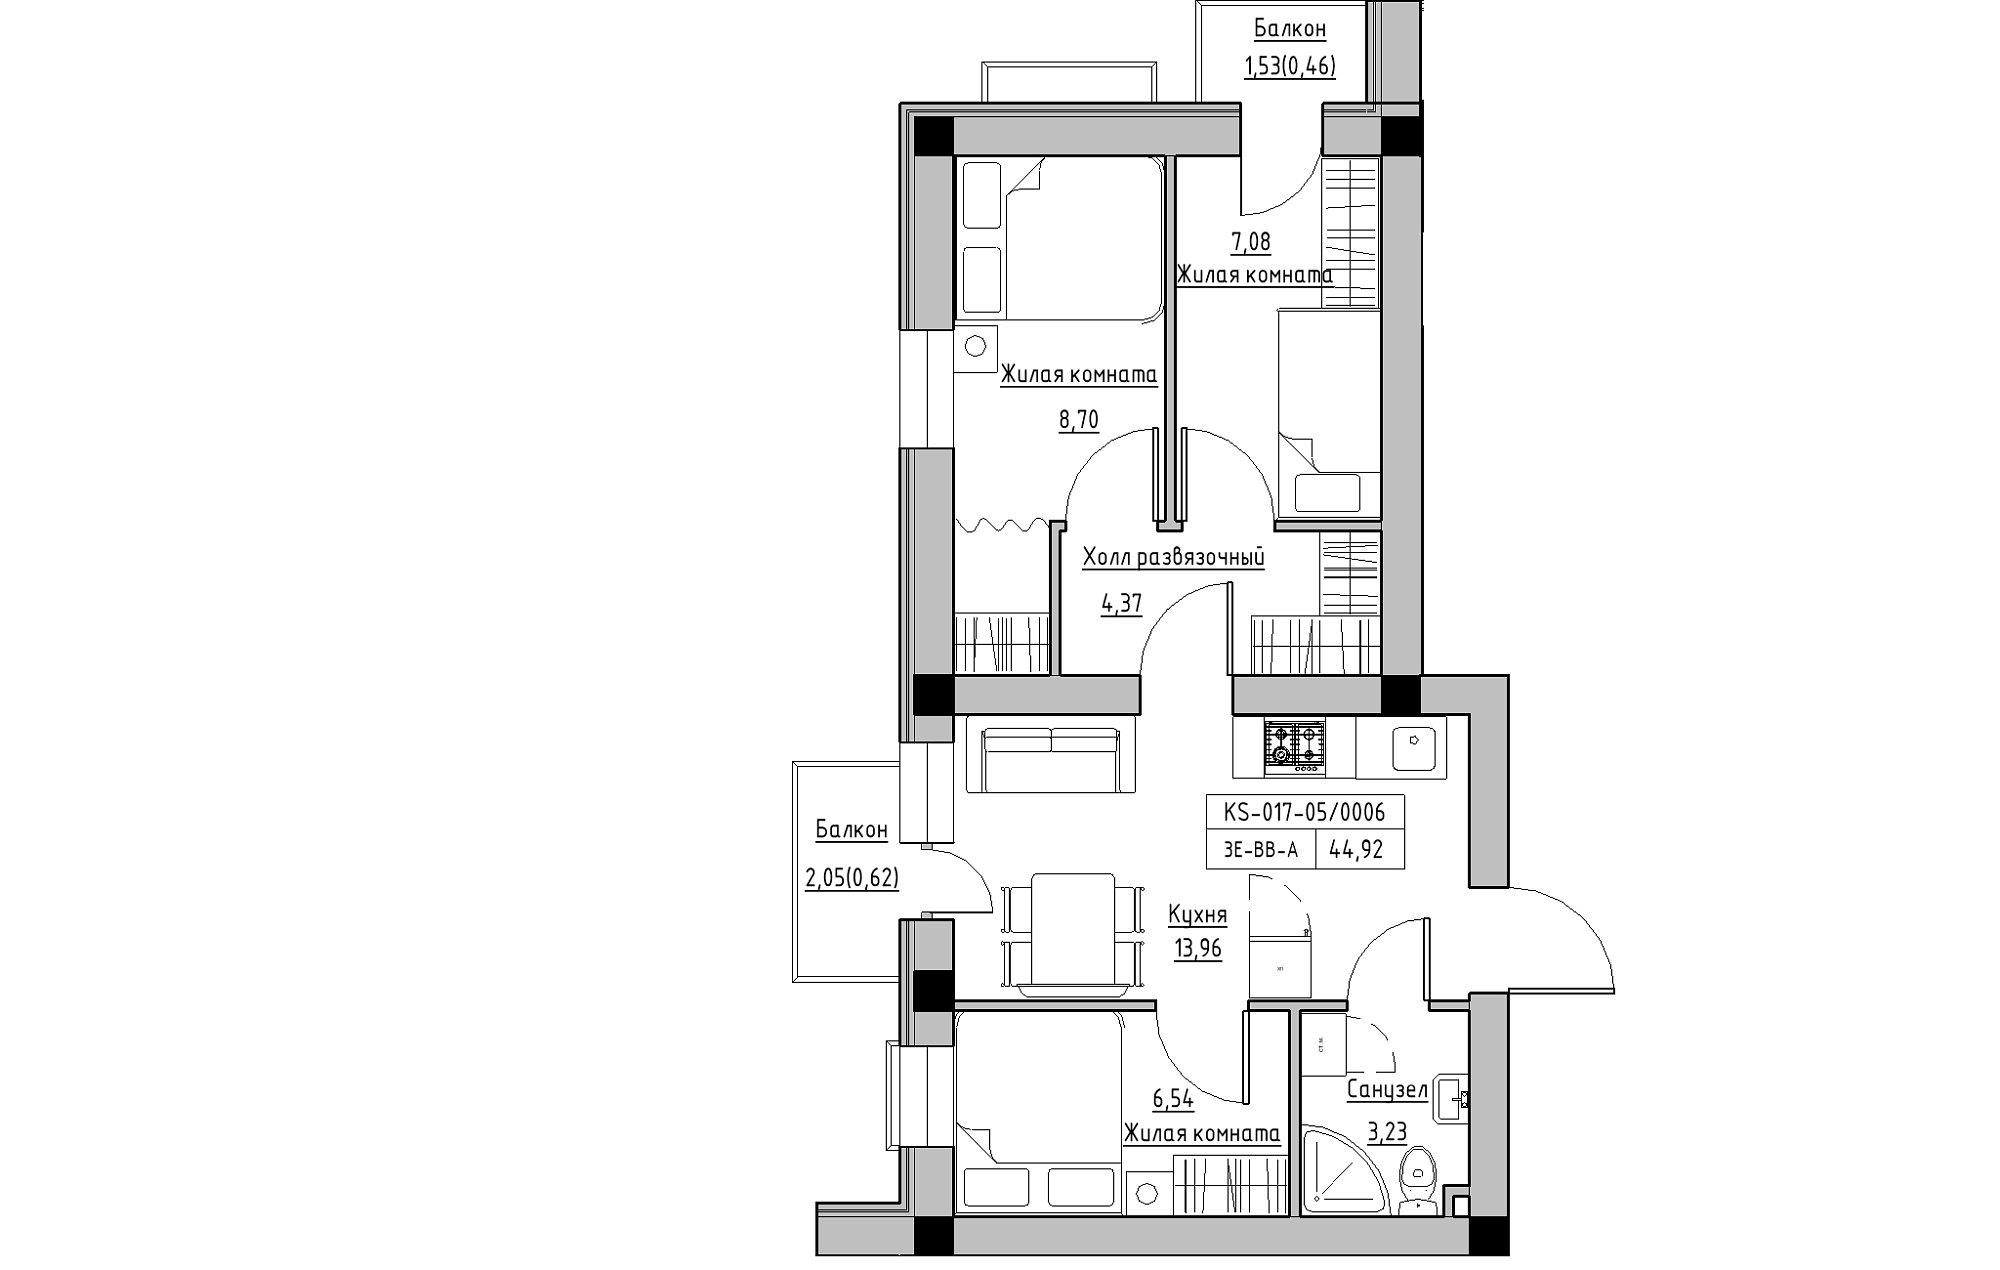 Планування 3-к квартира площею 44.92м2, KS-017-05/0006.